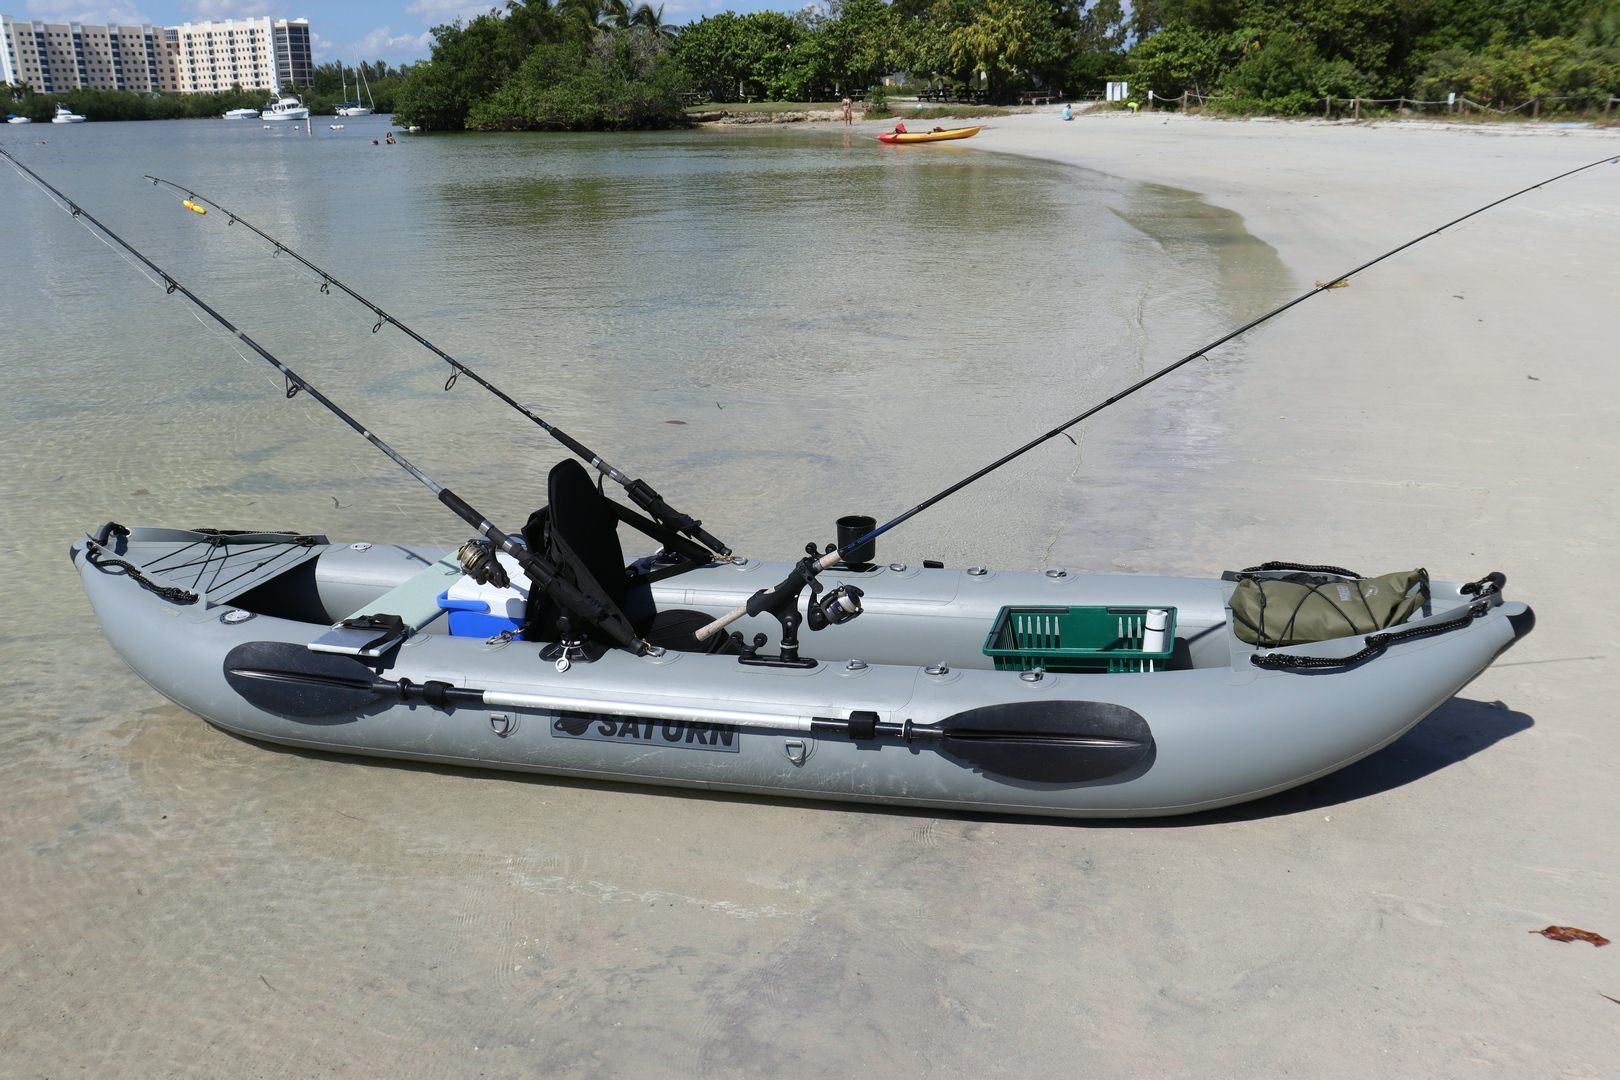 13' Fishing Kayak For River and Ocean OFK396